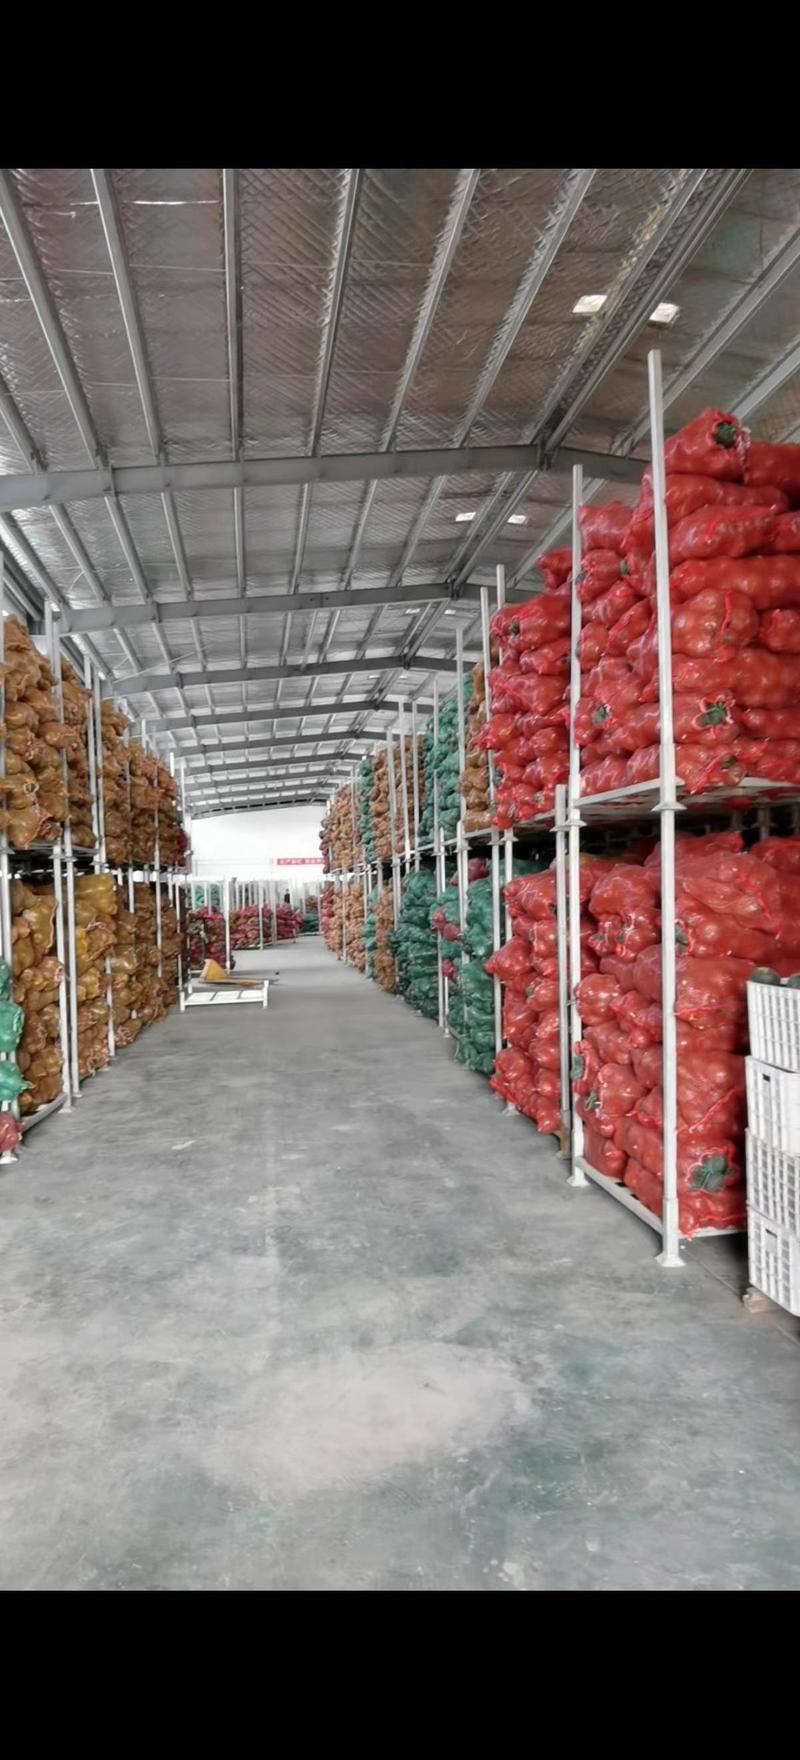 现有400吨内蒙古贝贝南瓜，品质好，规格单瓜0.6-1.